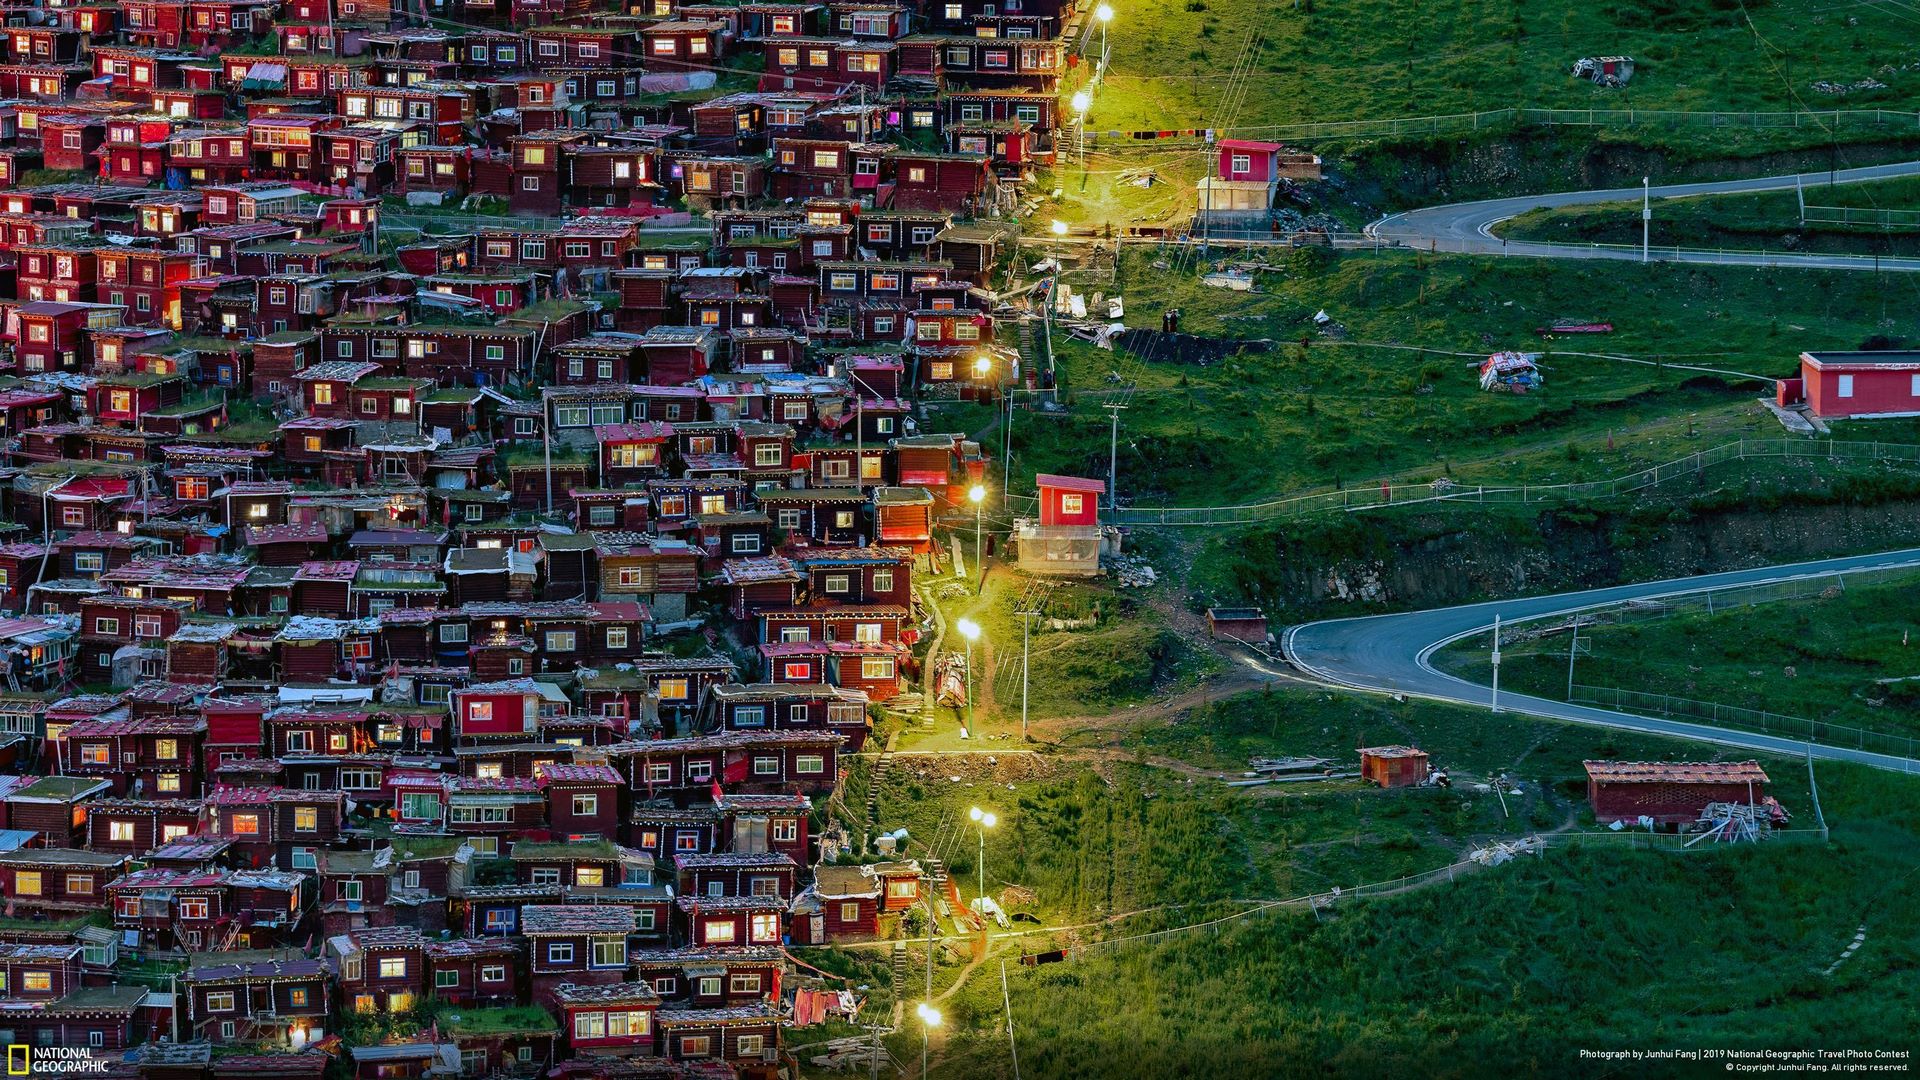 Giải do độc giả bình chọn mục Đô thị thuộc về tác phẩm “Follow the light” (tạm dịch: “Đi theo ánh sáng”) của Junhui Fang. Ảnh chụp tại Học viện Phật giáo Seda Larung Gar nằm trong thung lũng Larung ở độ cao 4.000 mét, cách thị trấn Sertar, Garze, Tây Tạng khoảng 15 km.